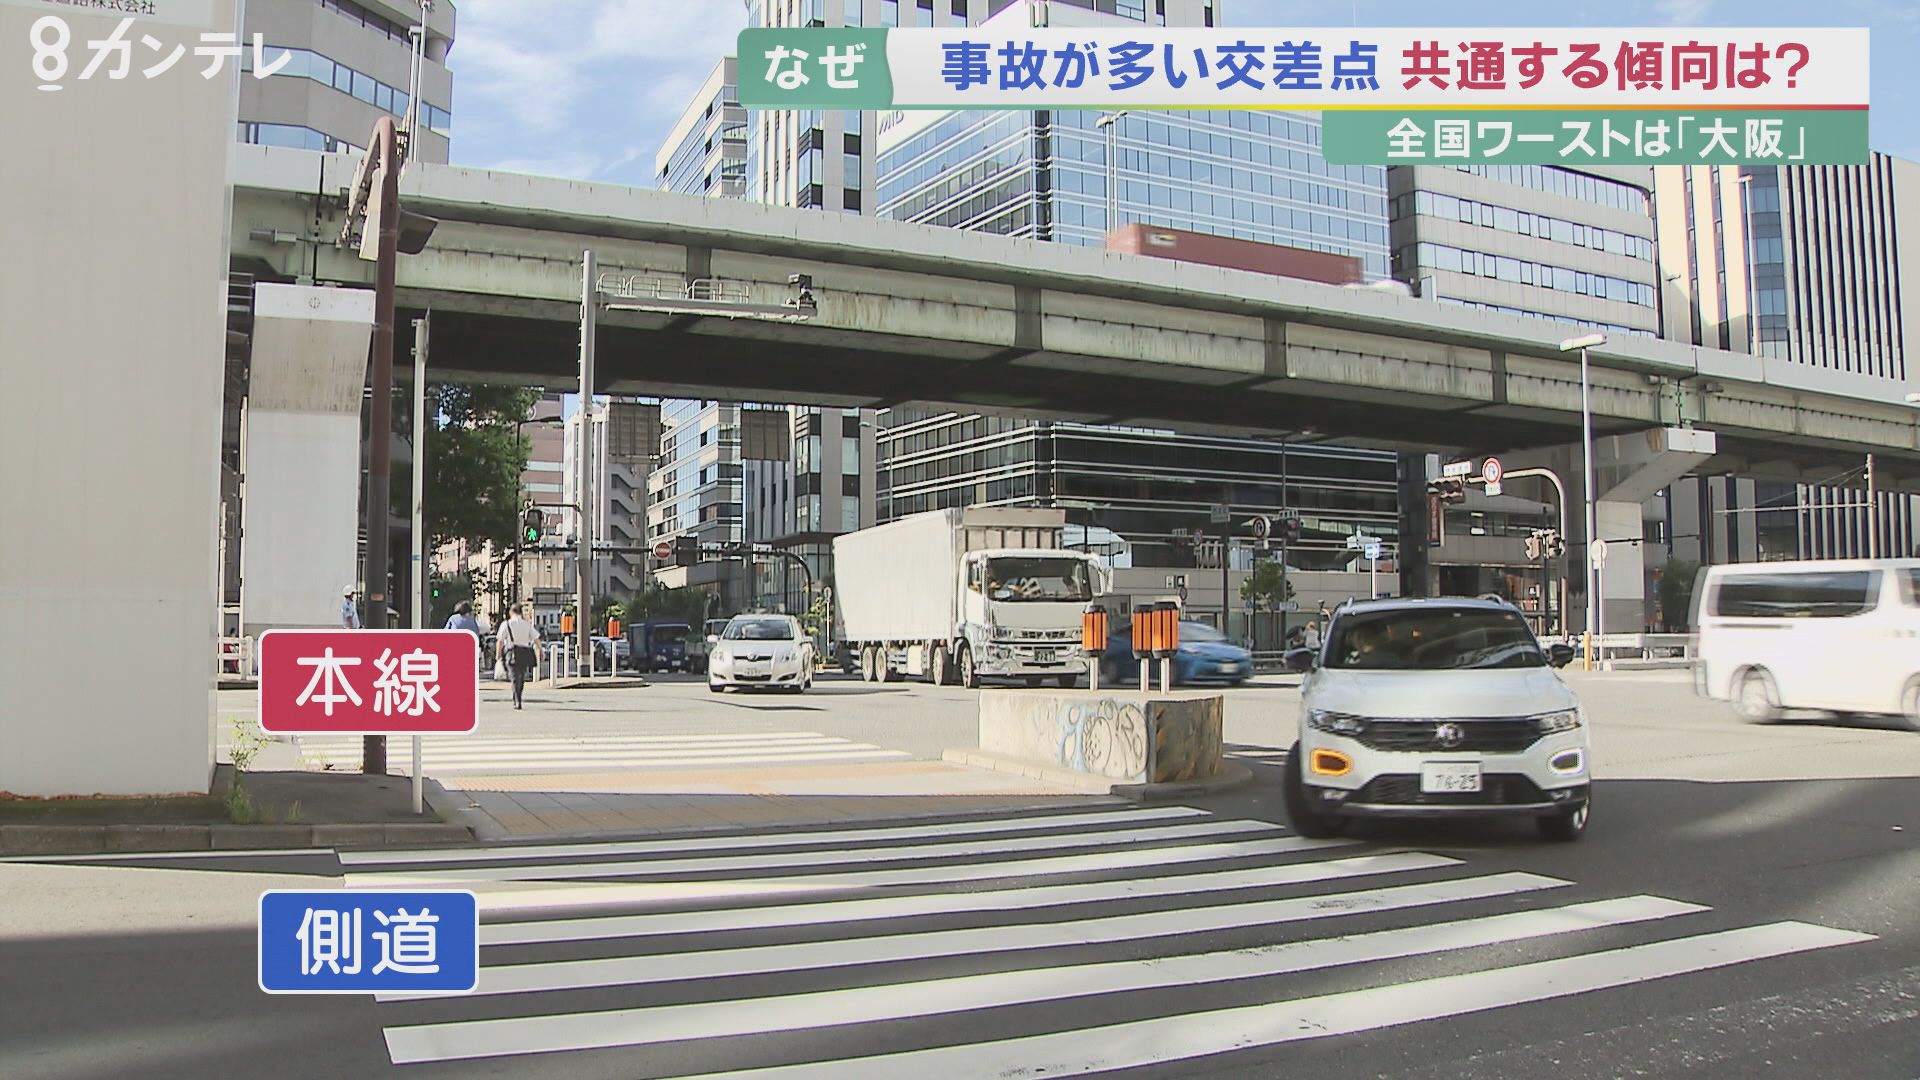 事故が多い交差点 全国ワースト10のうち6カ所が 大阪 複雑な車線も 本当の理由は せっかち だから 特集 報道ランナー ニュース 関西テレビ放送 カンテレ